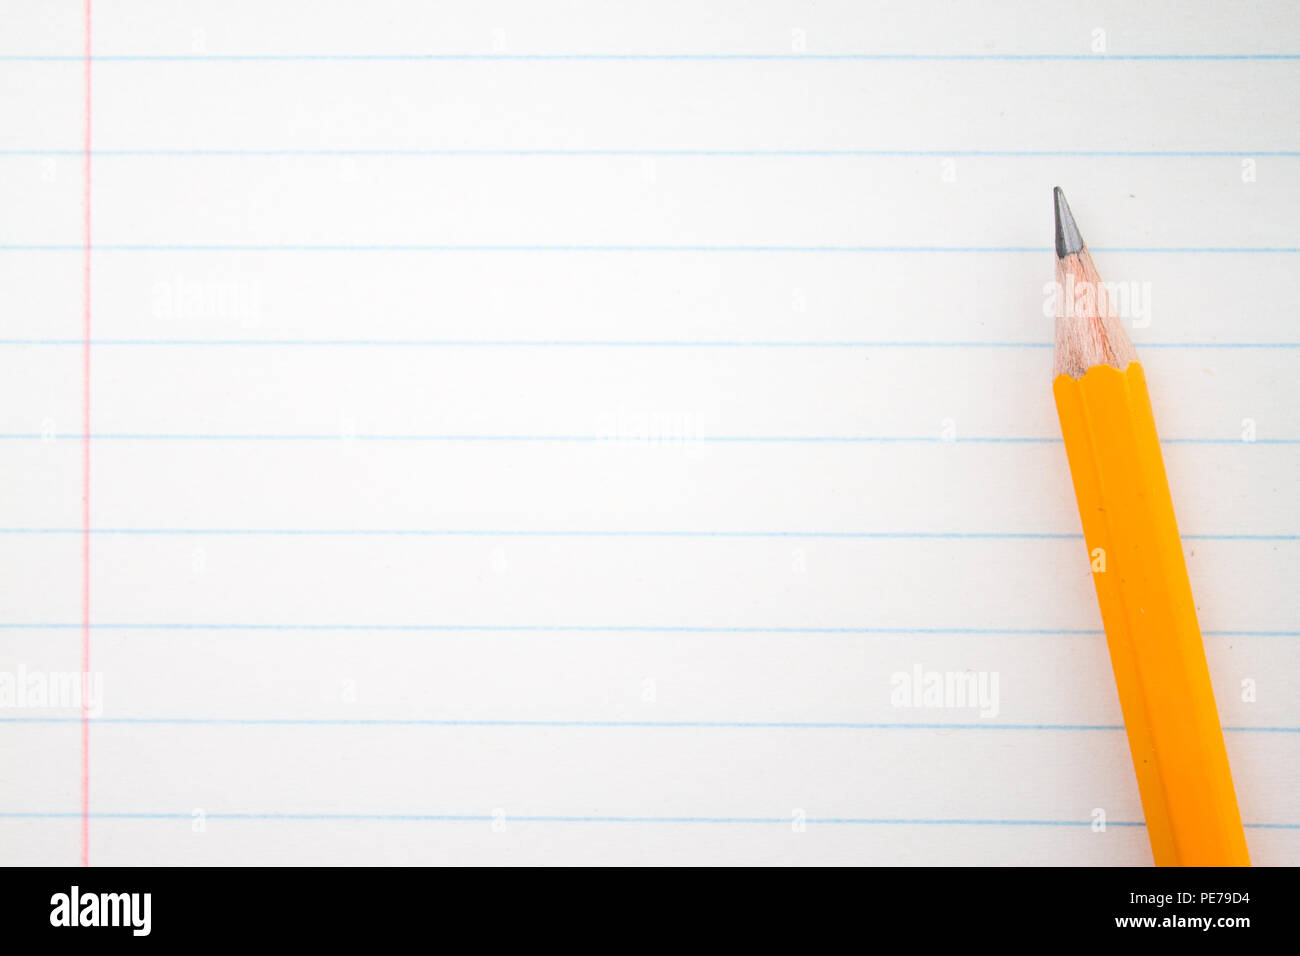 Retour à l'école, l'éducation concept - crayons orange close up et la composition livre sur l'arrière-plan pour l'éducation nouvelle année académique commence ou à long terme de l'étude Banque D'Images